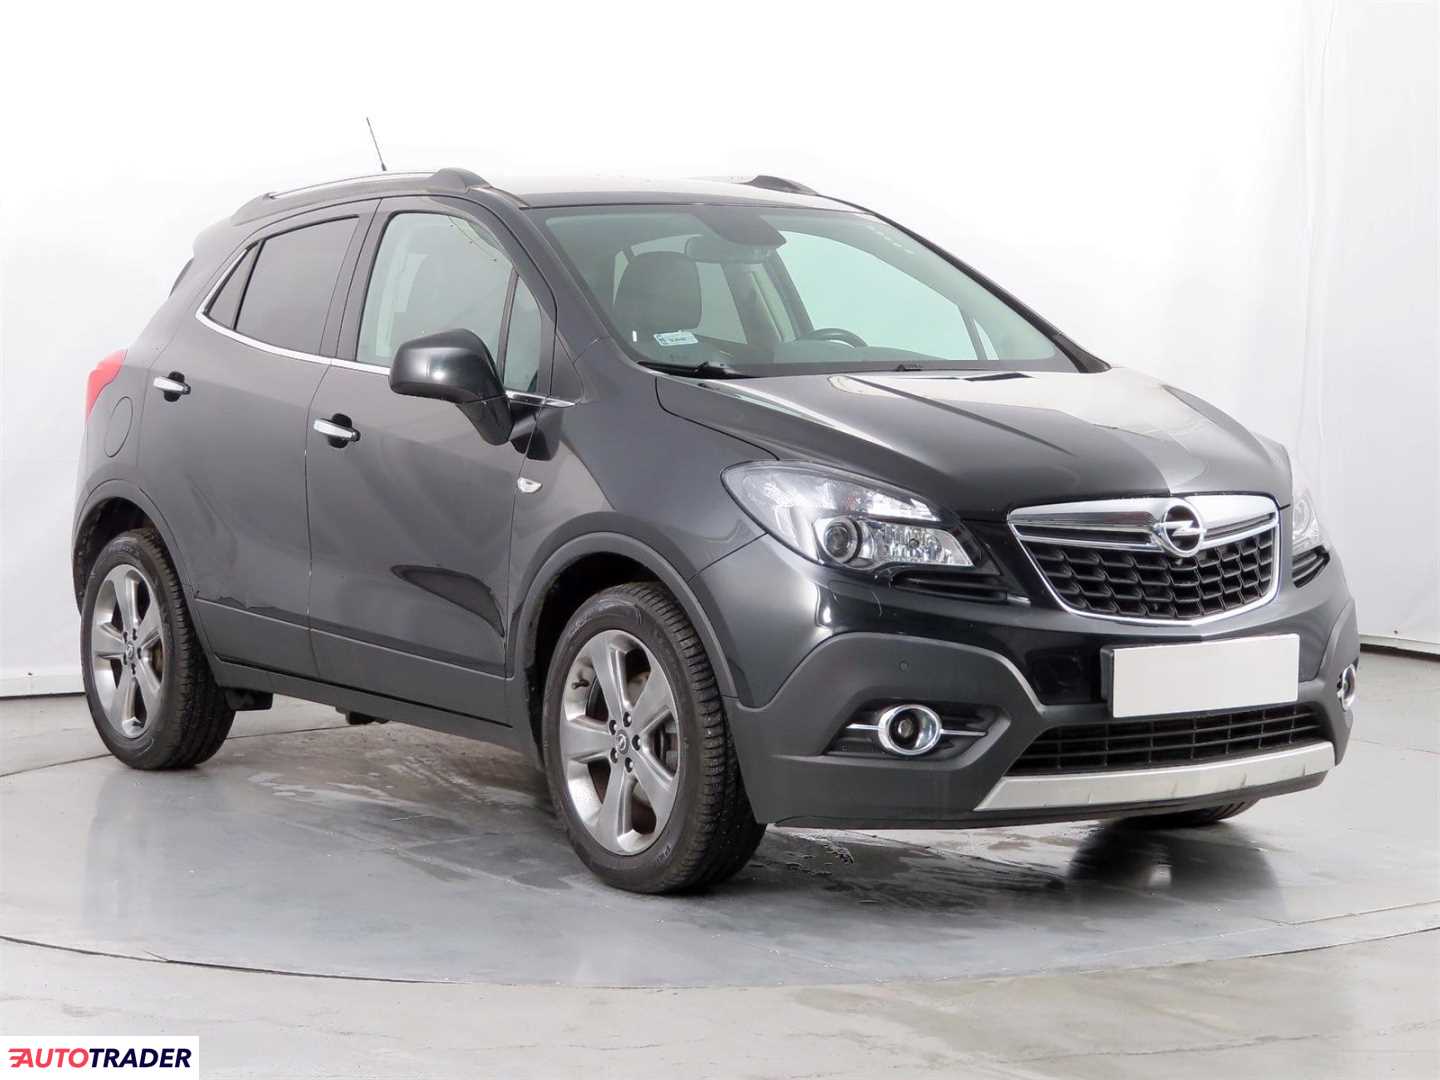 Opel Mokka 2014 1.6 113 KM